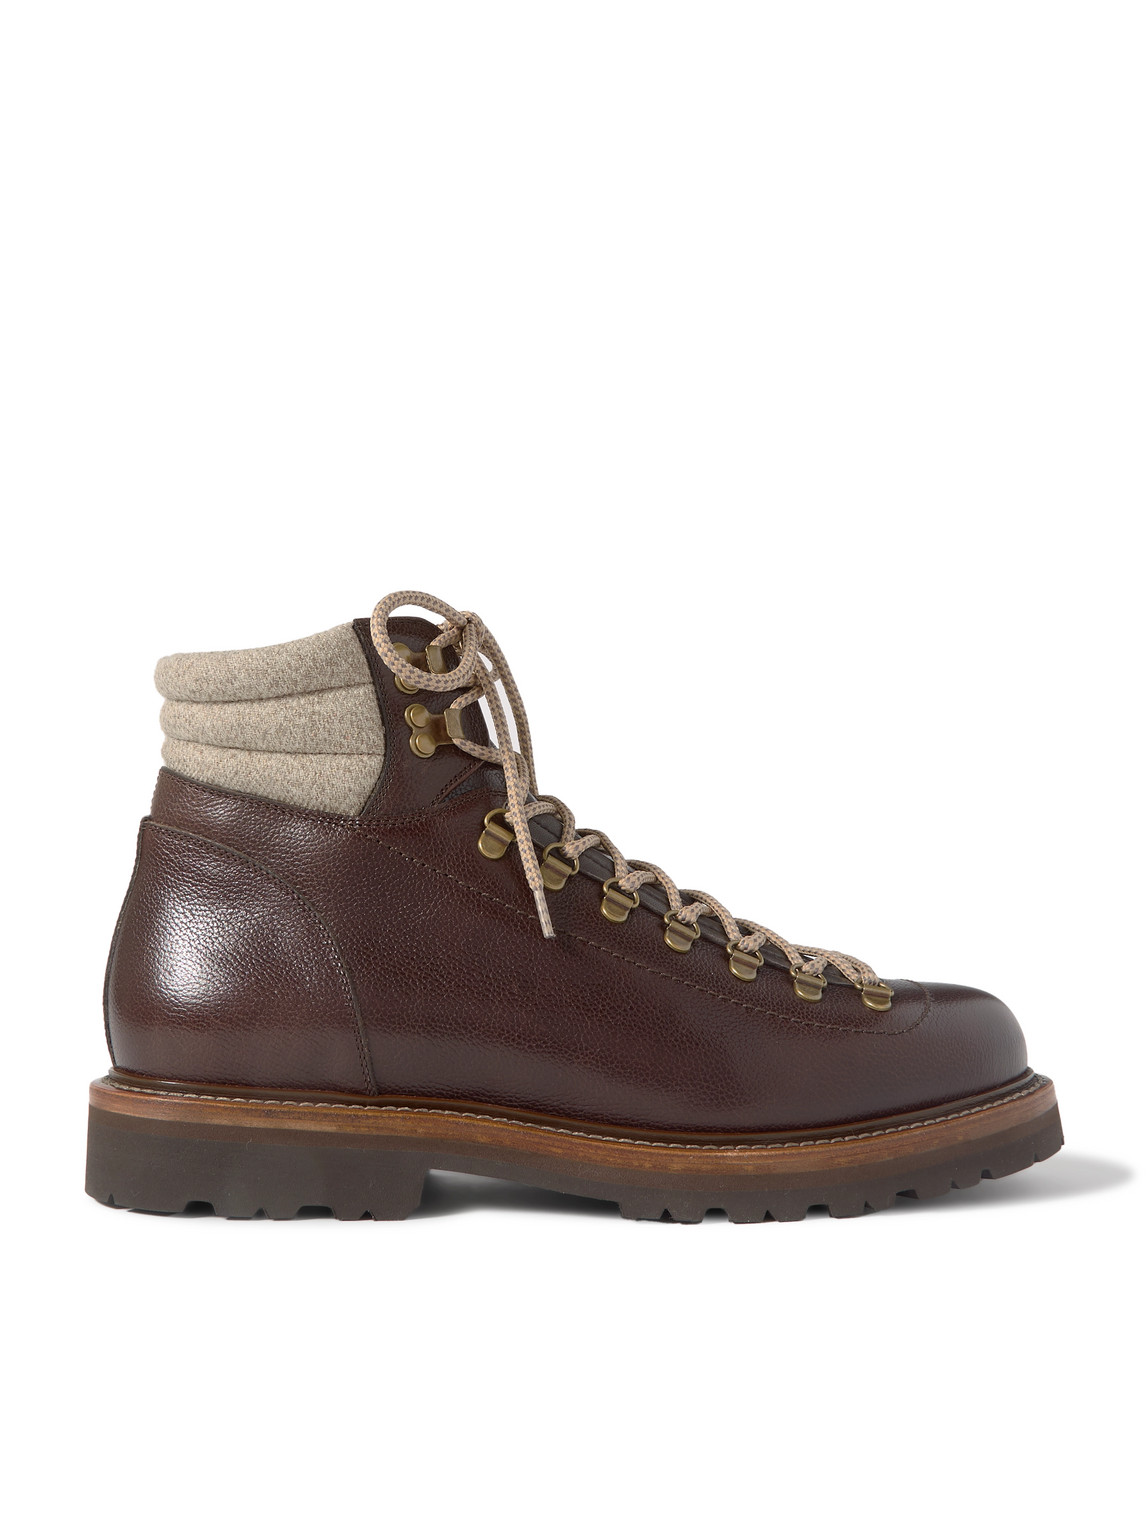 Brunello Cucinelli - Cashmere-Trimmed Leather Boots - Men - Brown - EU 43.5 von Brunello Cucinelli